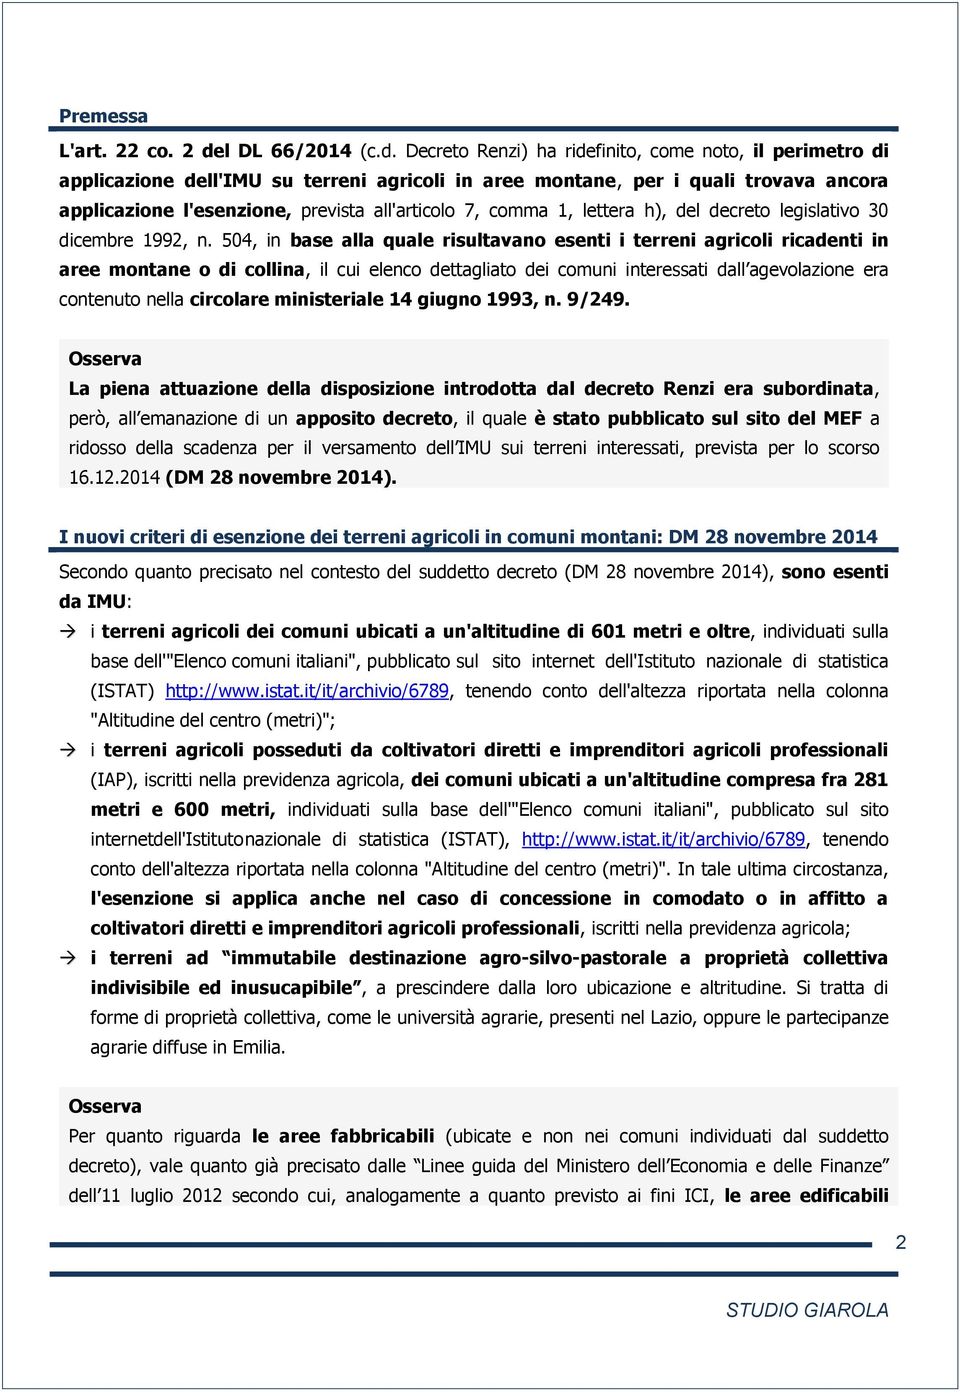 Decreto Renzi) ha ridefinito, come noto, il perimetro di applicazione dell'imu su terreni agricoli in aree montane, per i quali trovava ancora applicazione l'esenzione, prevista all'articolo 7, comma